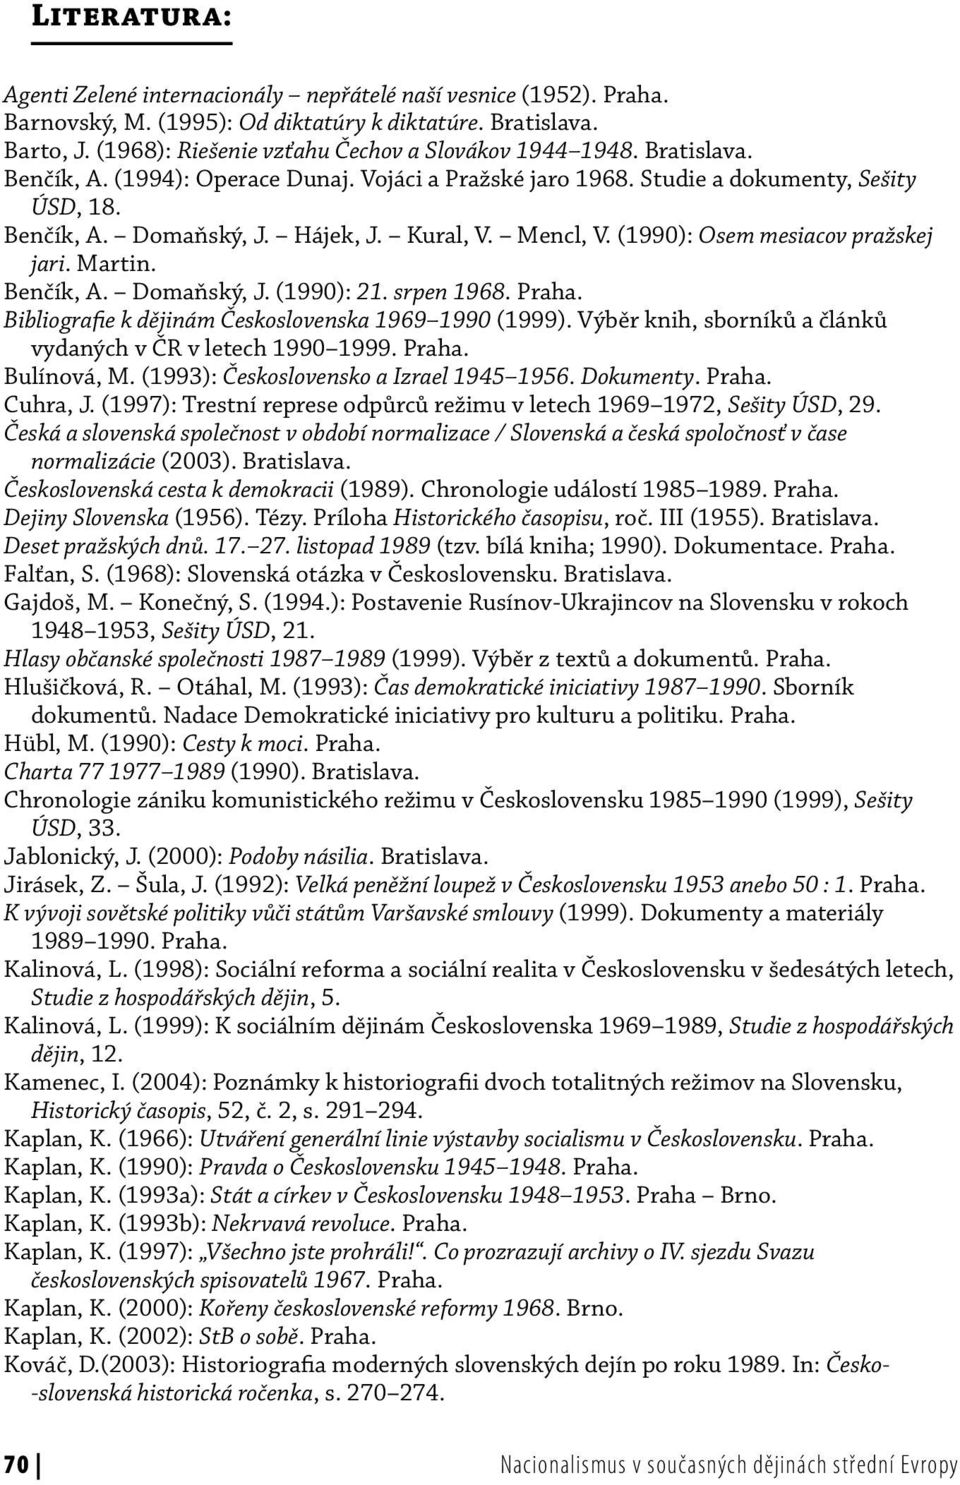 Kural, V. Mencl, V. (1990): Osem mesiacov pražskej jari. Martin. Benčík, A. Domaňský, J. (1990): 21. srpen 1968. Praha. Bibliografie k dějinám Československa 1969 1990 (1999).